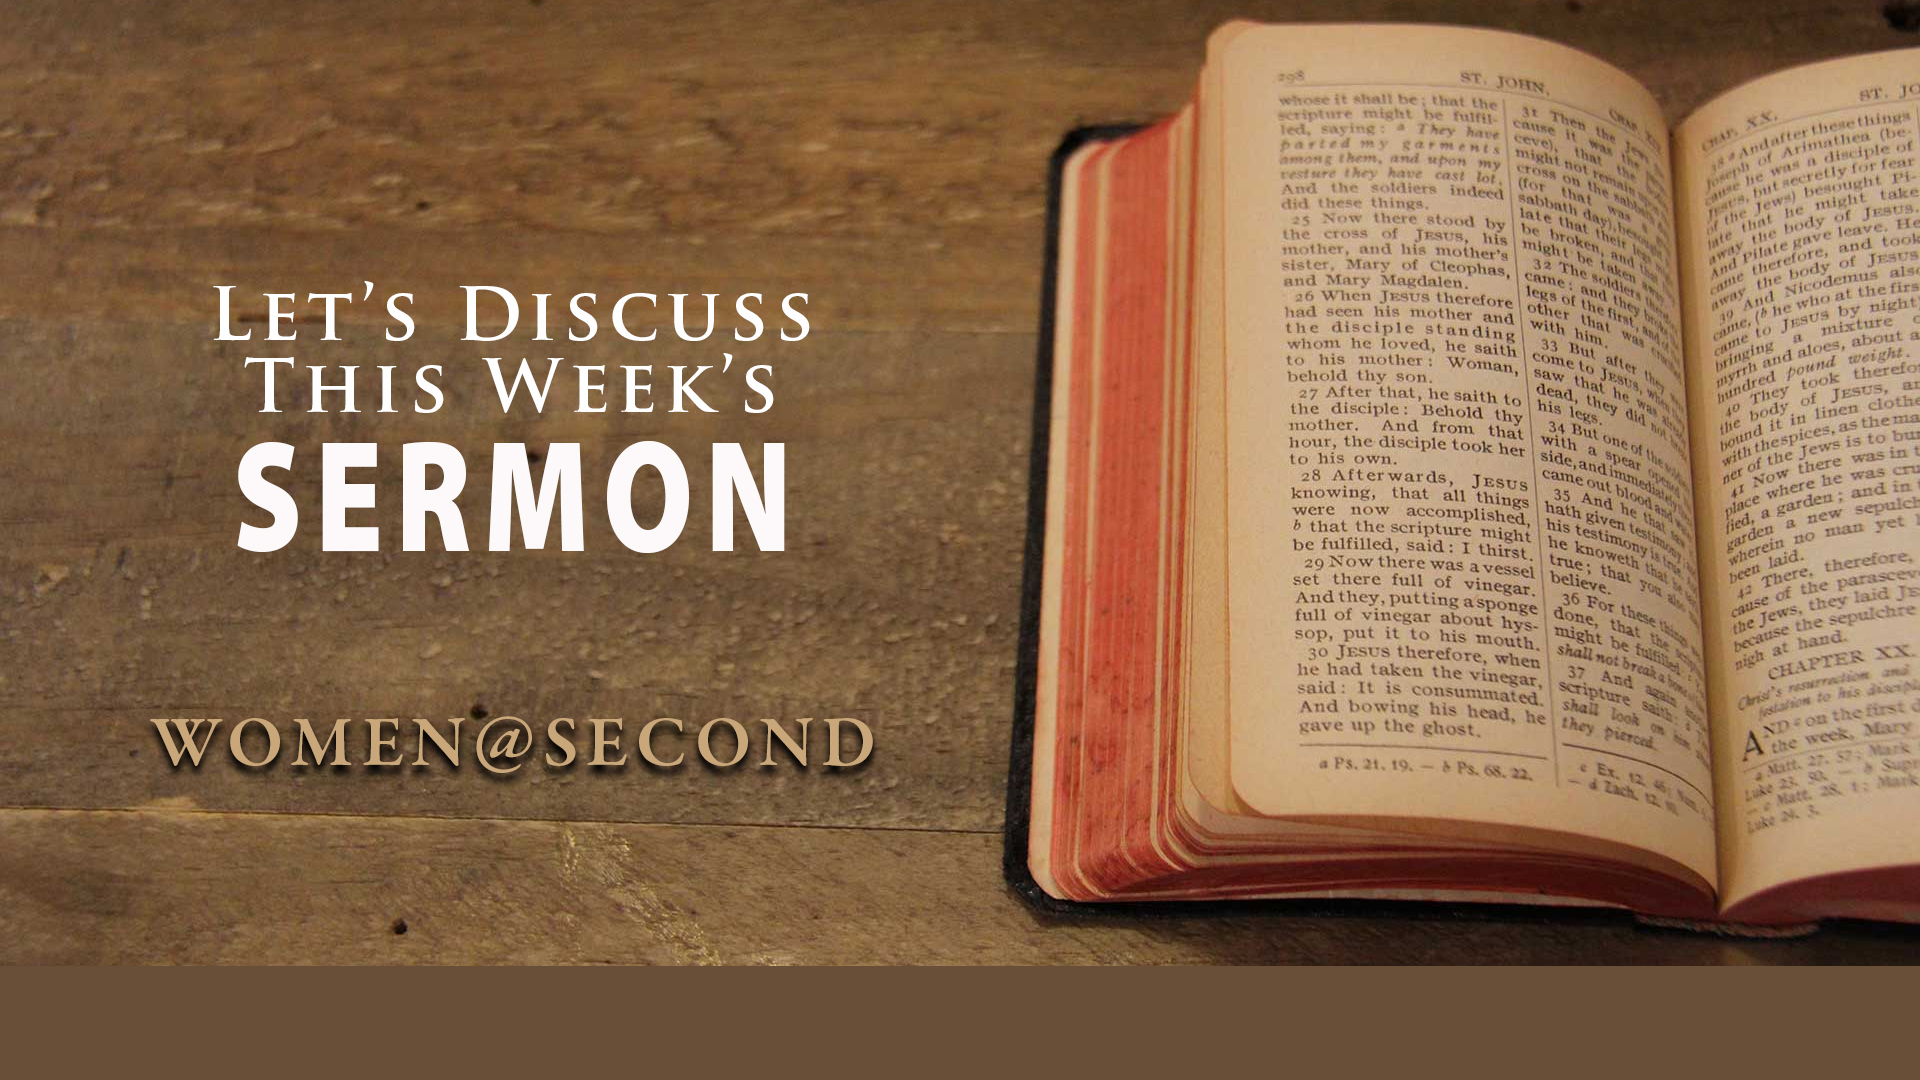 Women@Second Sermon Discussion Group
Thursdays, 6:30-8 p.m., Zoom
